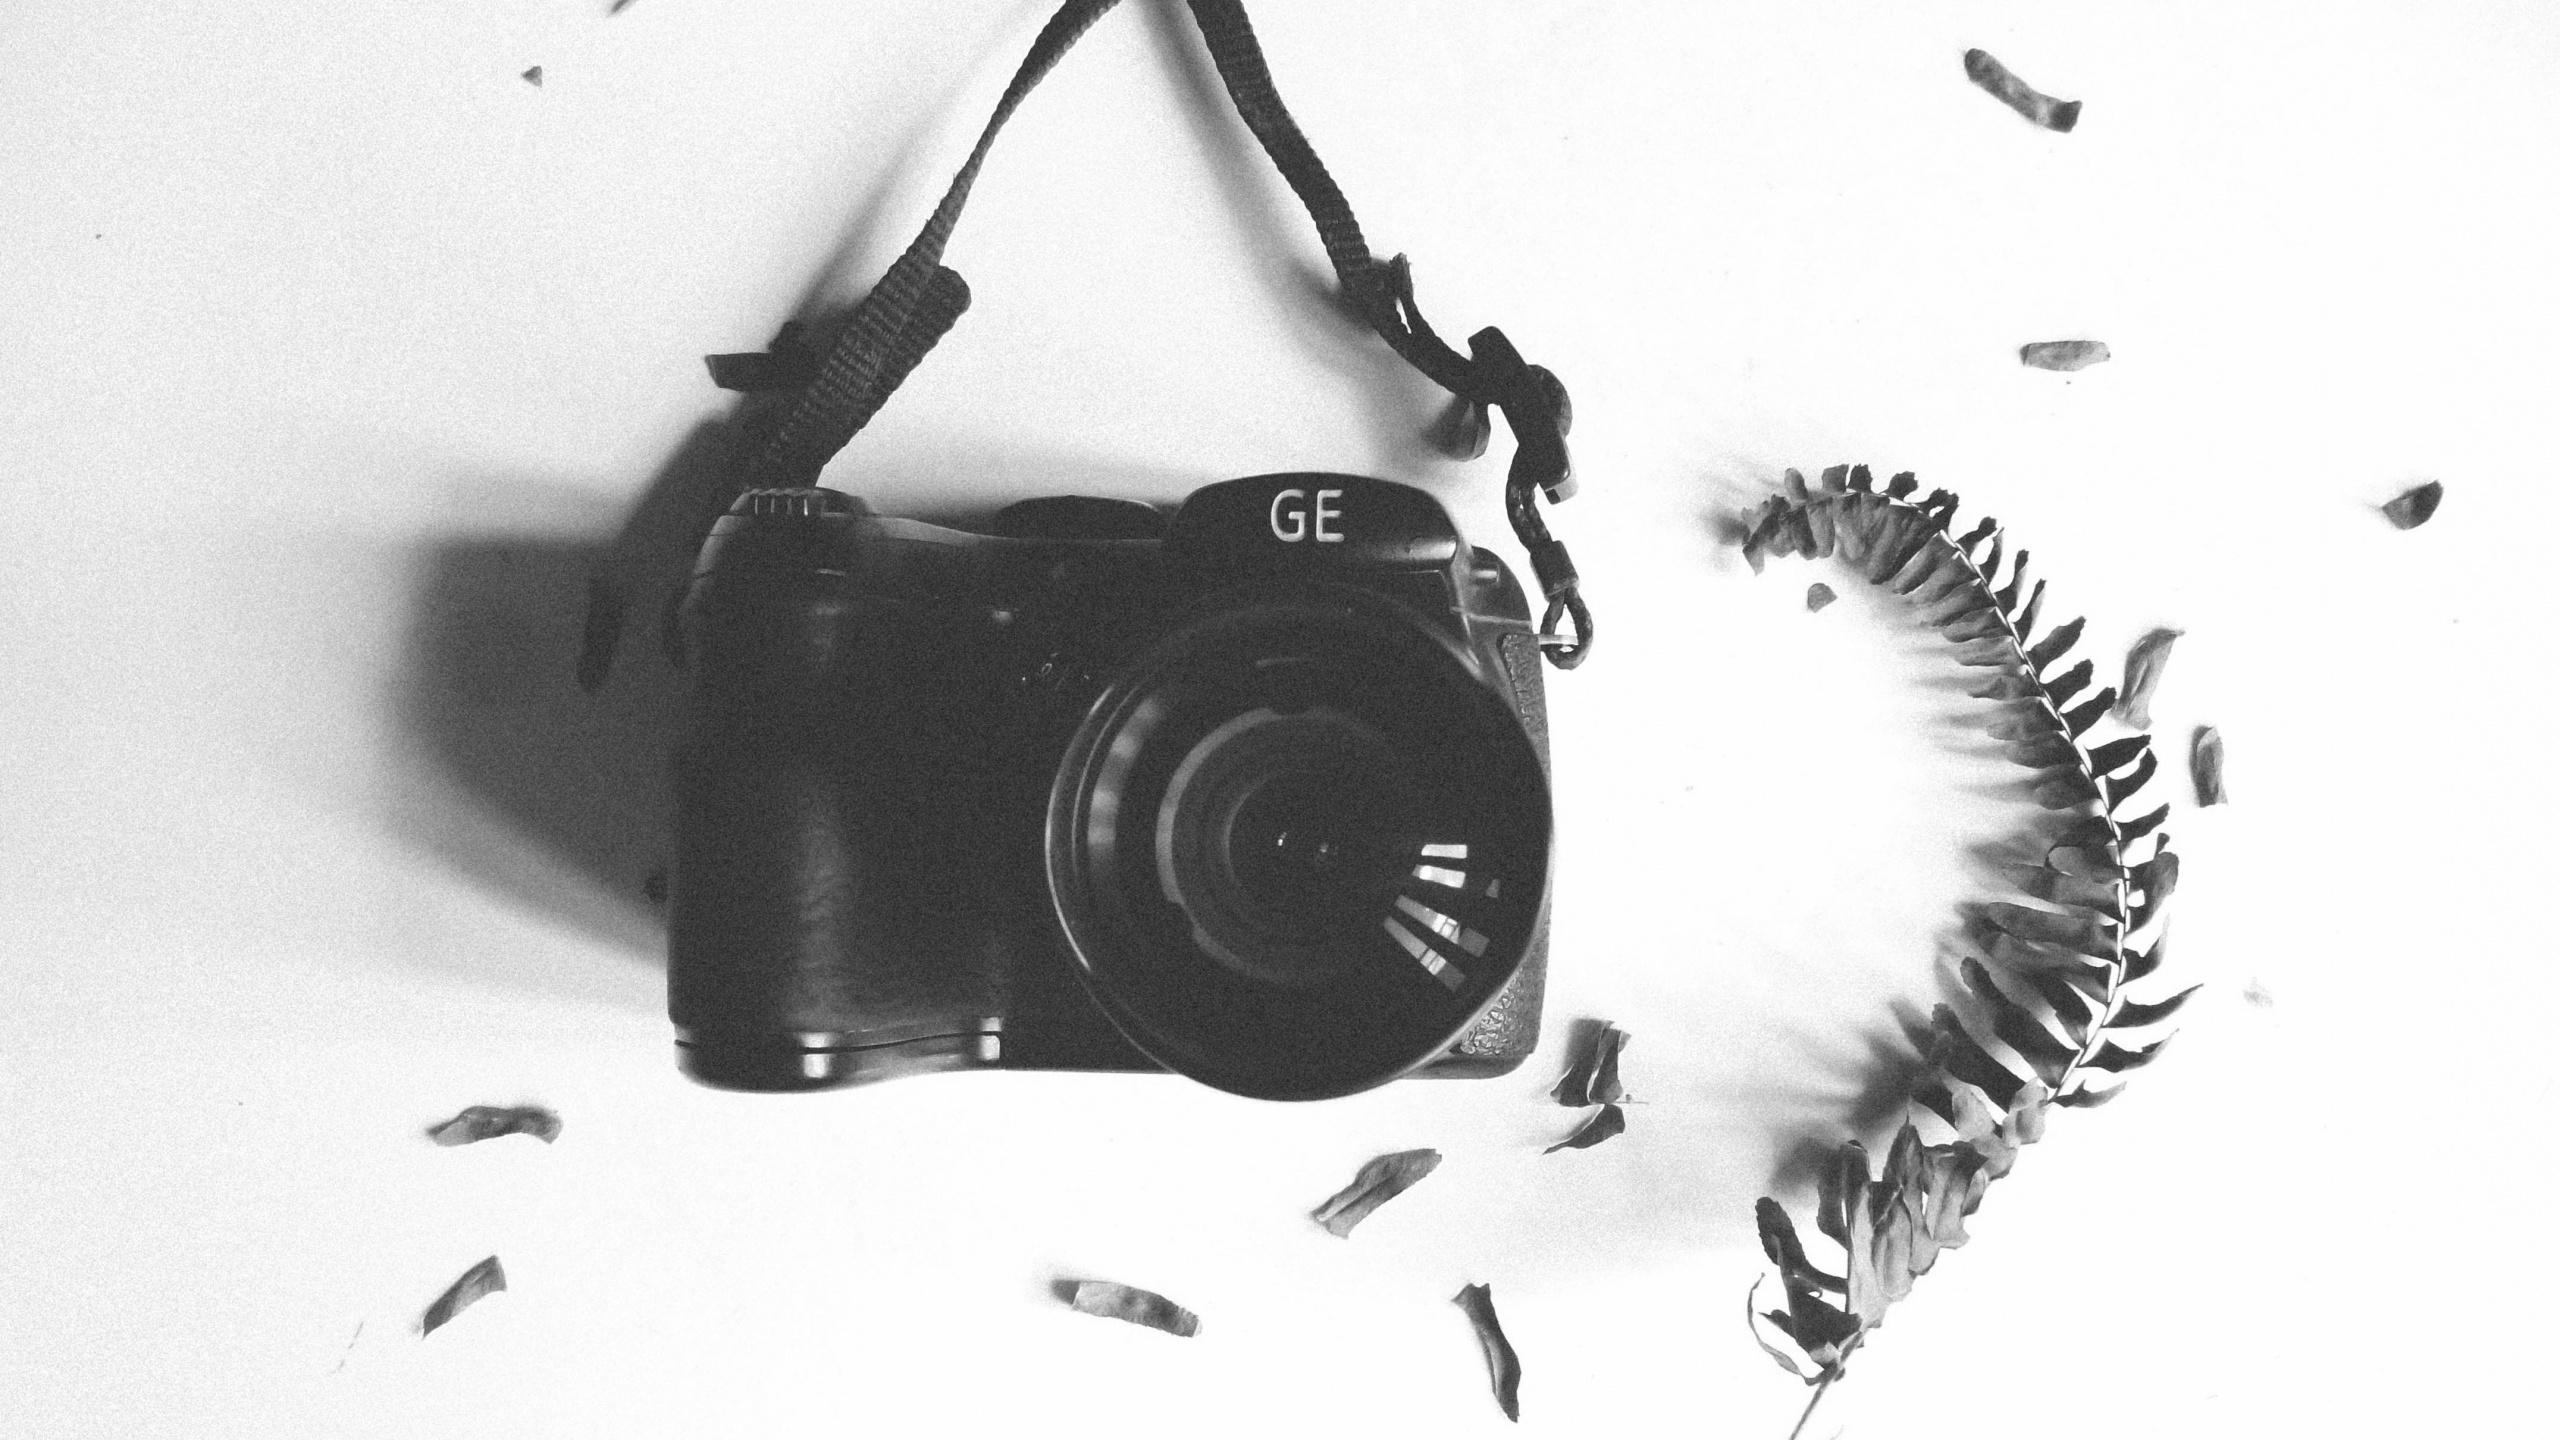 Schwarze Nikon Dslr Kamera Auf Weißem Textil. Wallpaper in 2560x1440 Resolution